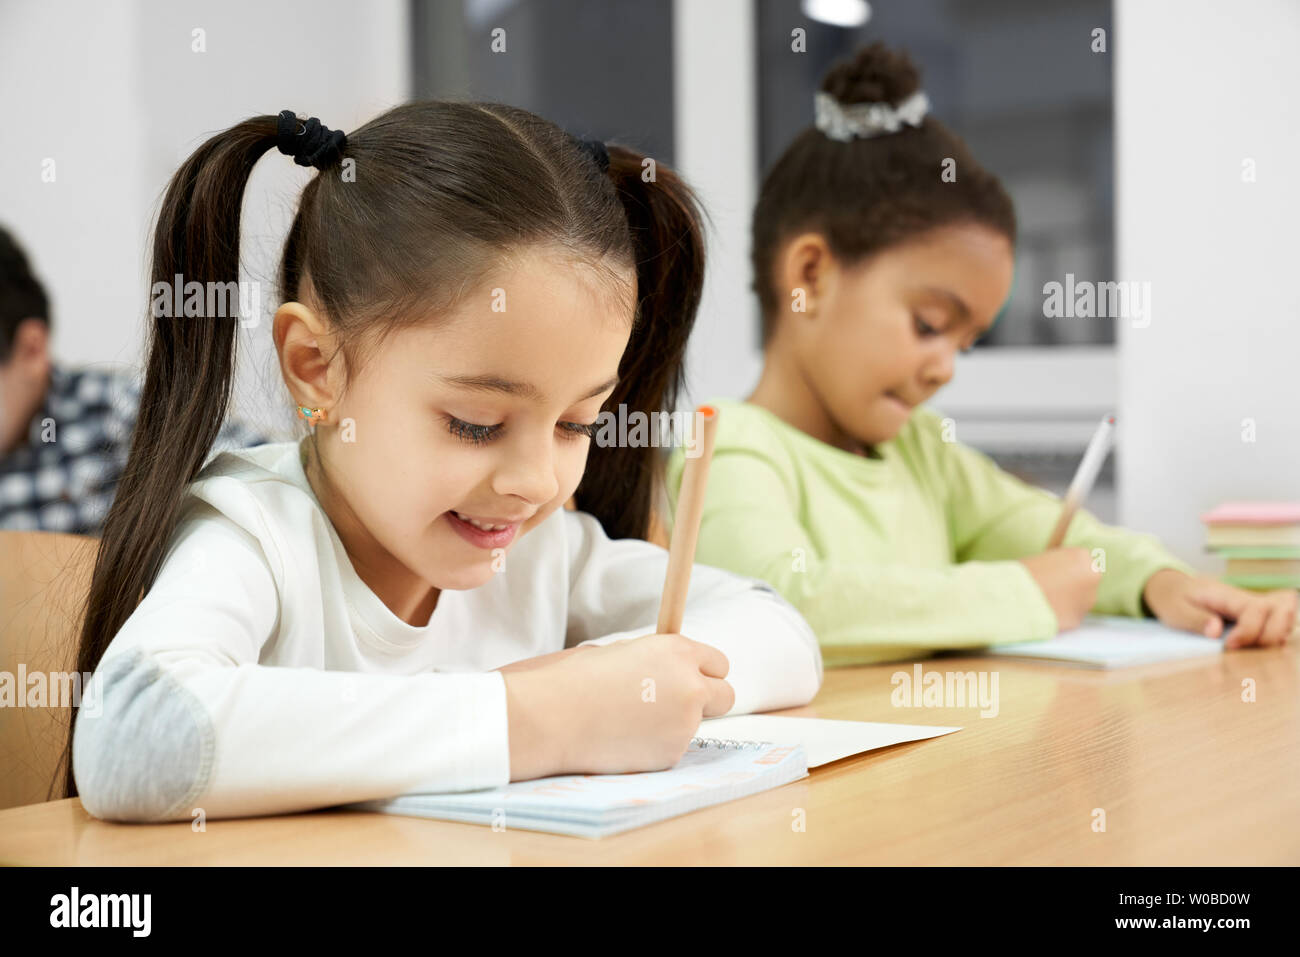 Schön, glücklich, Schülerinnen der Grundschule am Schreibtisch im Klassenzimmer sitzen, Bleistifte und sorgfältig Schreiben in Copybook. Mädchen auf der Suche im Notebook, posierend, lächelnd. Stockfoto